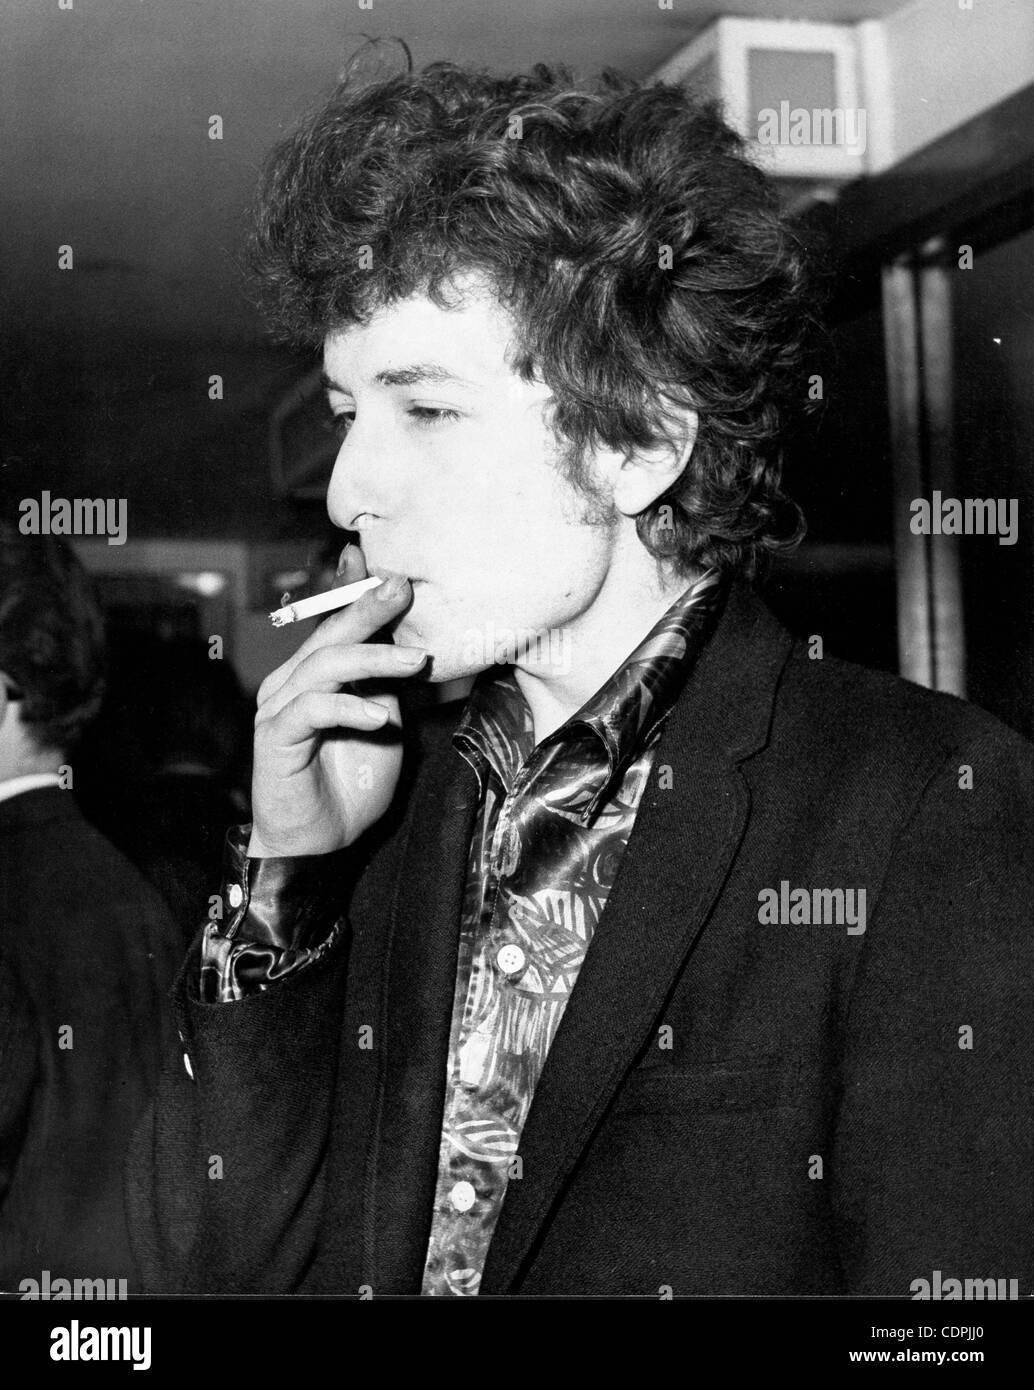 Abril 27, 1965 - Londres, Inglaterra, Reino Unido - El cantante folk Bob Dylan fumar un cigarrillo. Dylan está en la ciudad por su tour británico en el Hotel Savoy. (Crédito de la Imagen: © KEYSTONE Pictures/ZUMAPRESS.com) Foto de stock